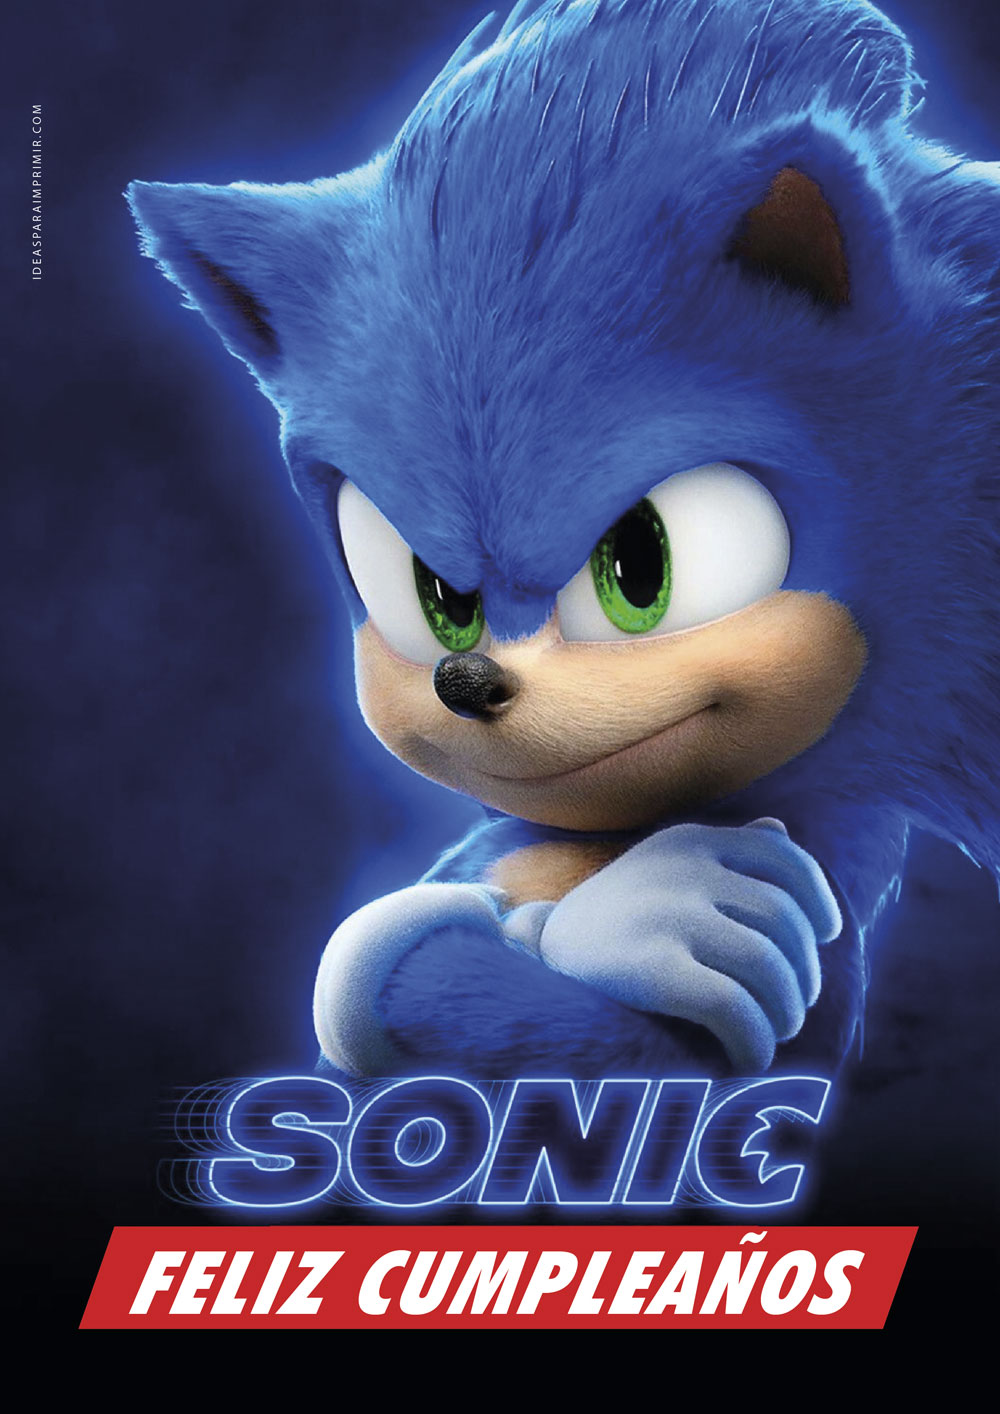 Poster Feliz Cumpleaños de Sonic